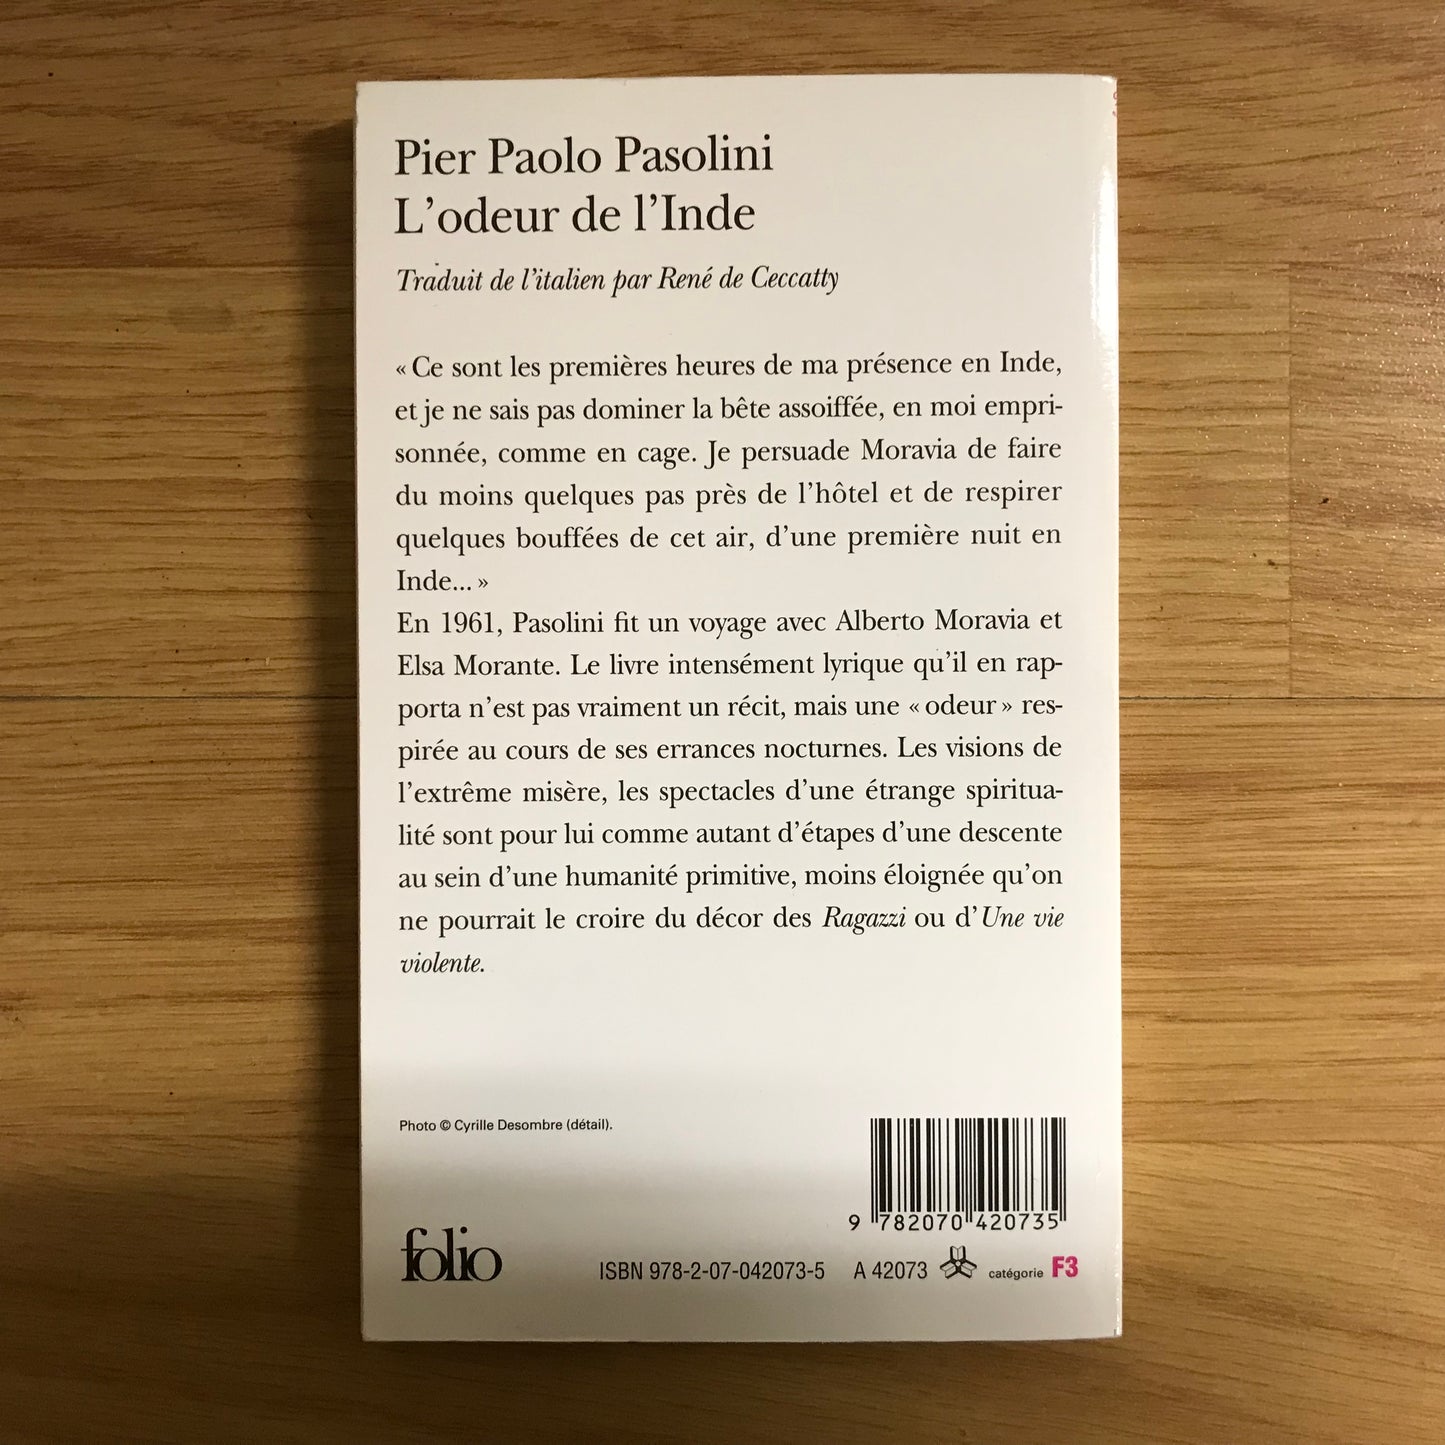 Pasolini, Pier Paolo - L’odeur de l’Inde